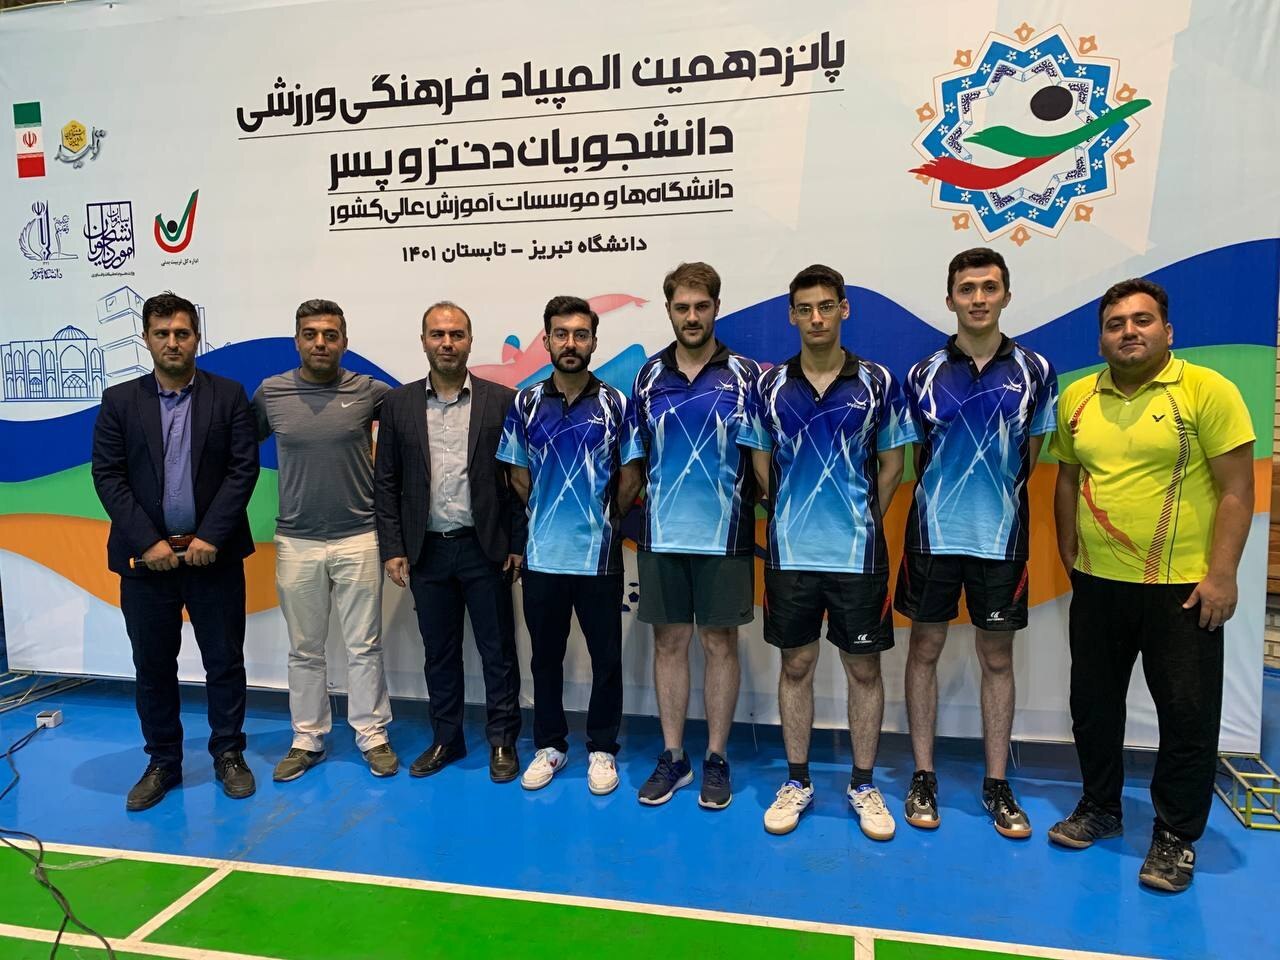 تیم دانشگاه امیرکبیر مقام سوم مسابقات تنیس روی میزرا کسب کرد